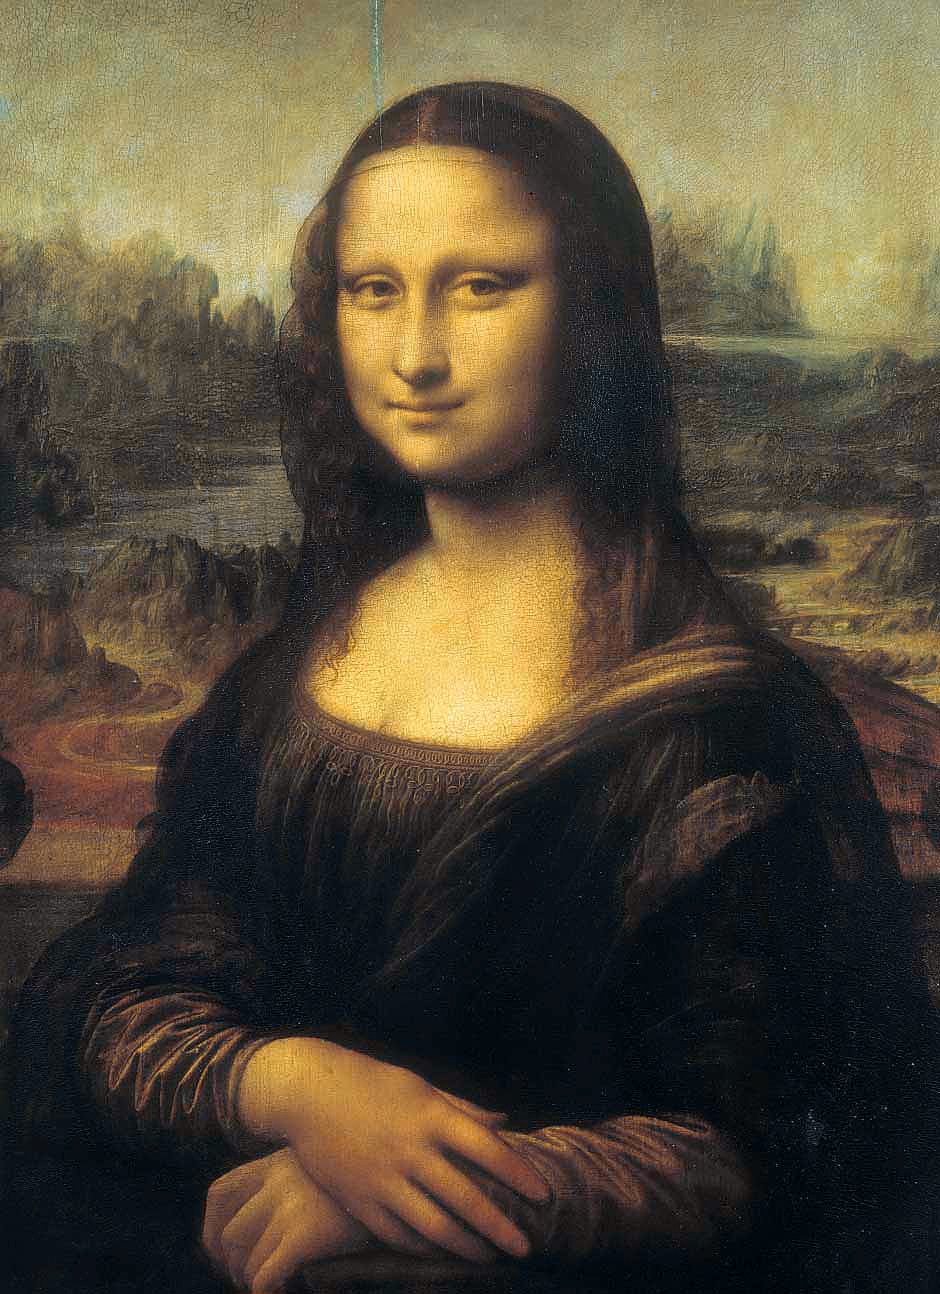 Leonardo da Vinci's Mona Lisa or La Gioconda (1503-1507), Louvre Museum, Paris, France.